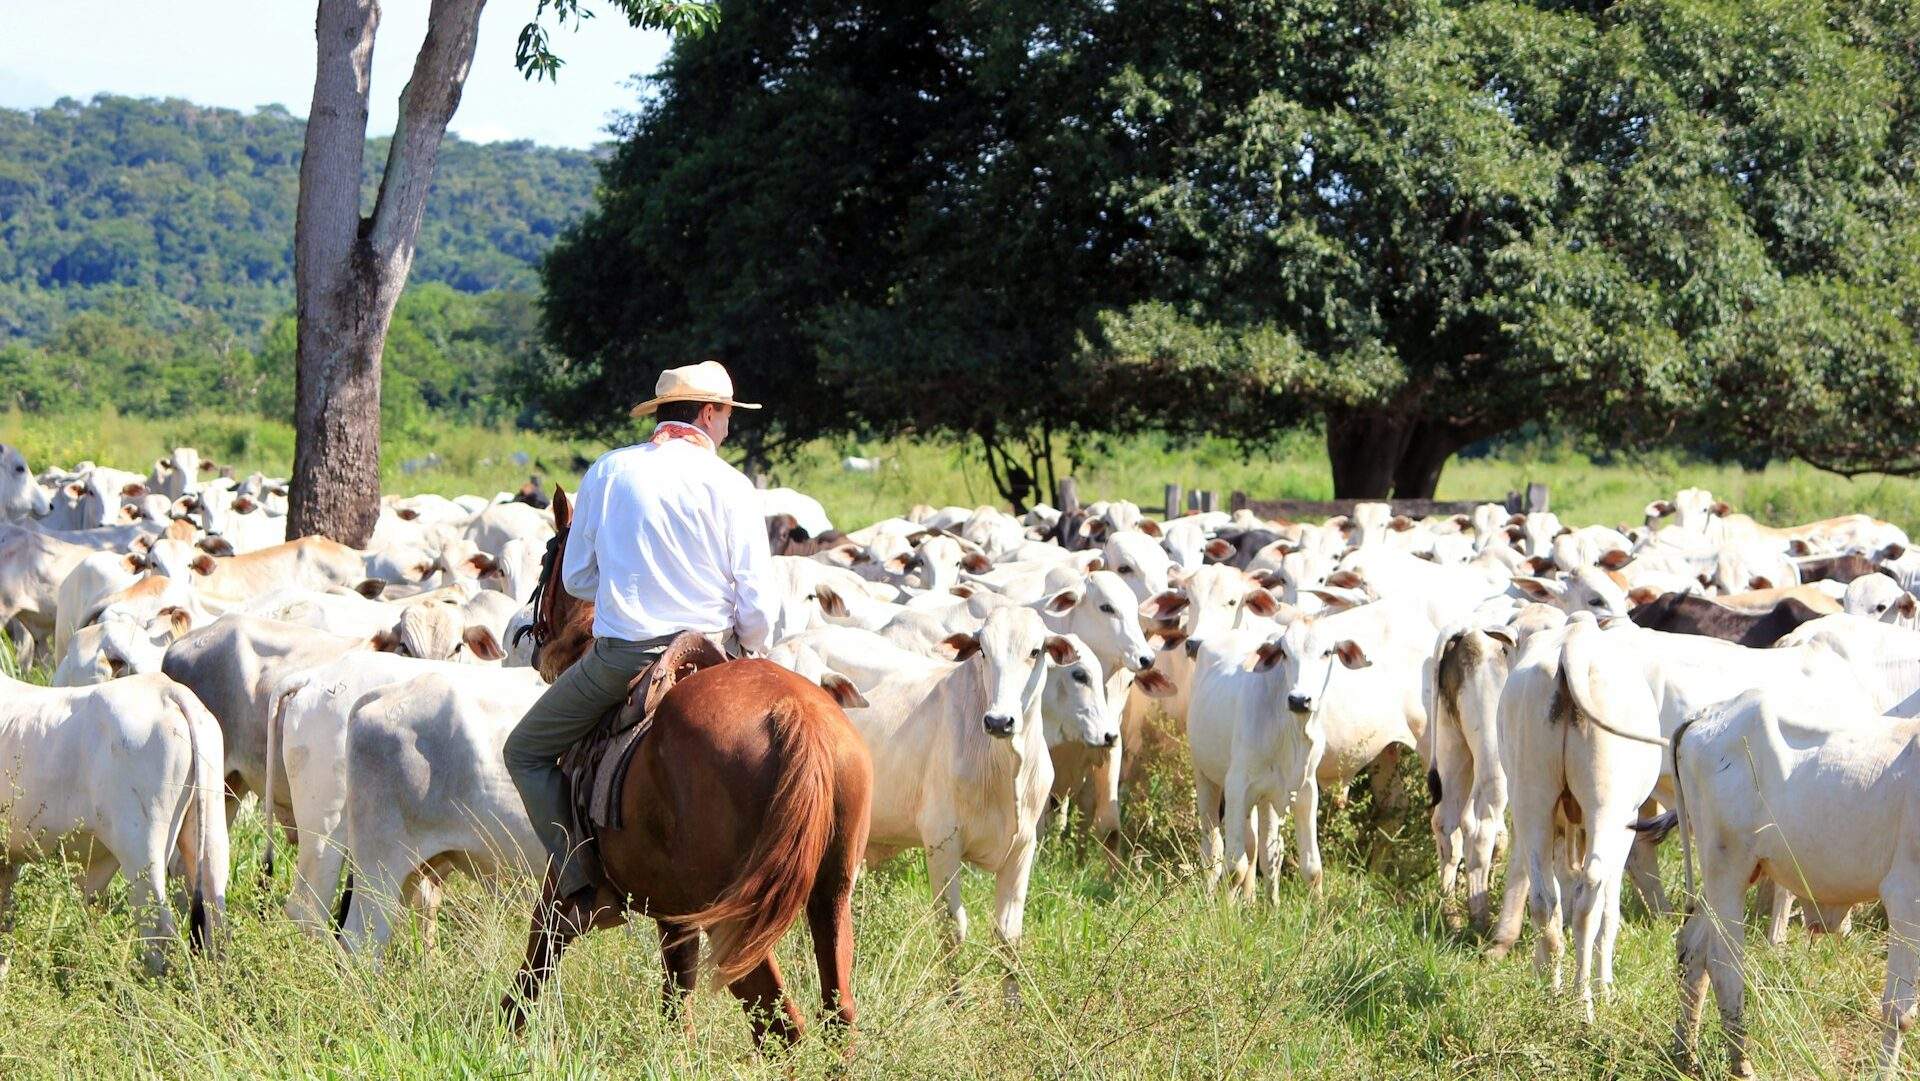 A cowboy managing his Livestock